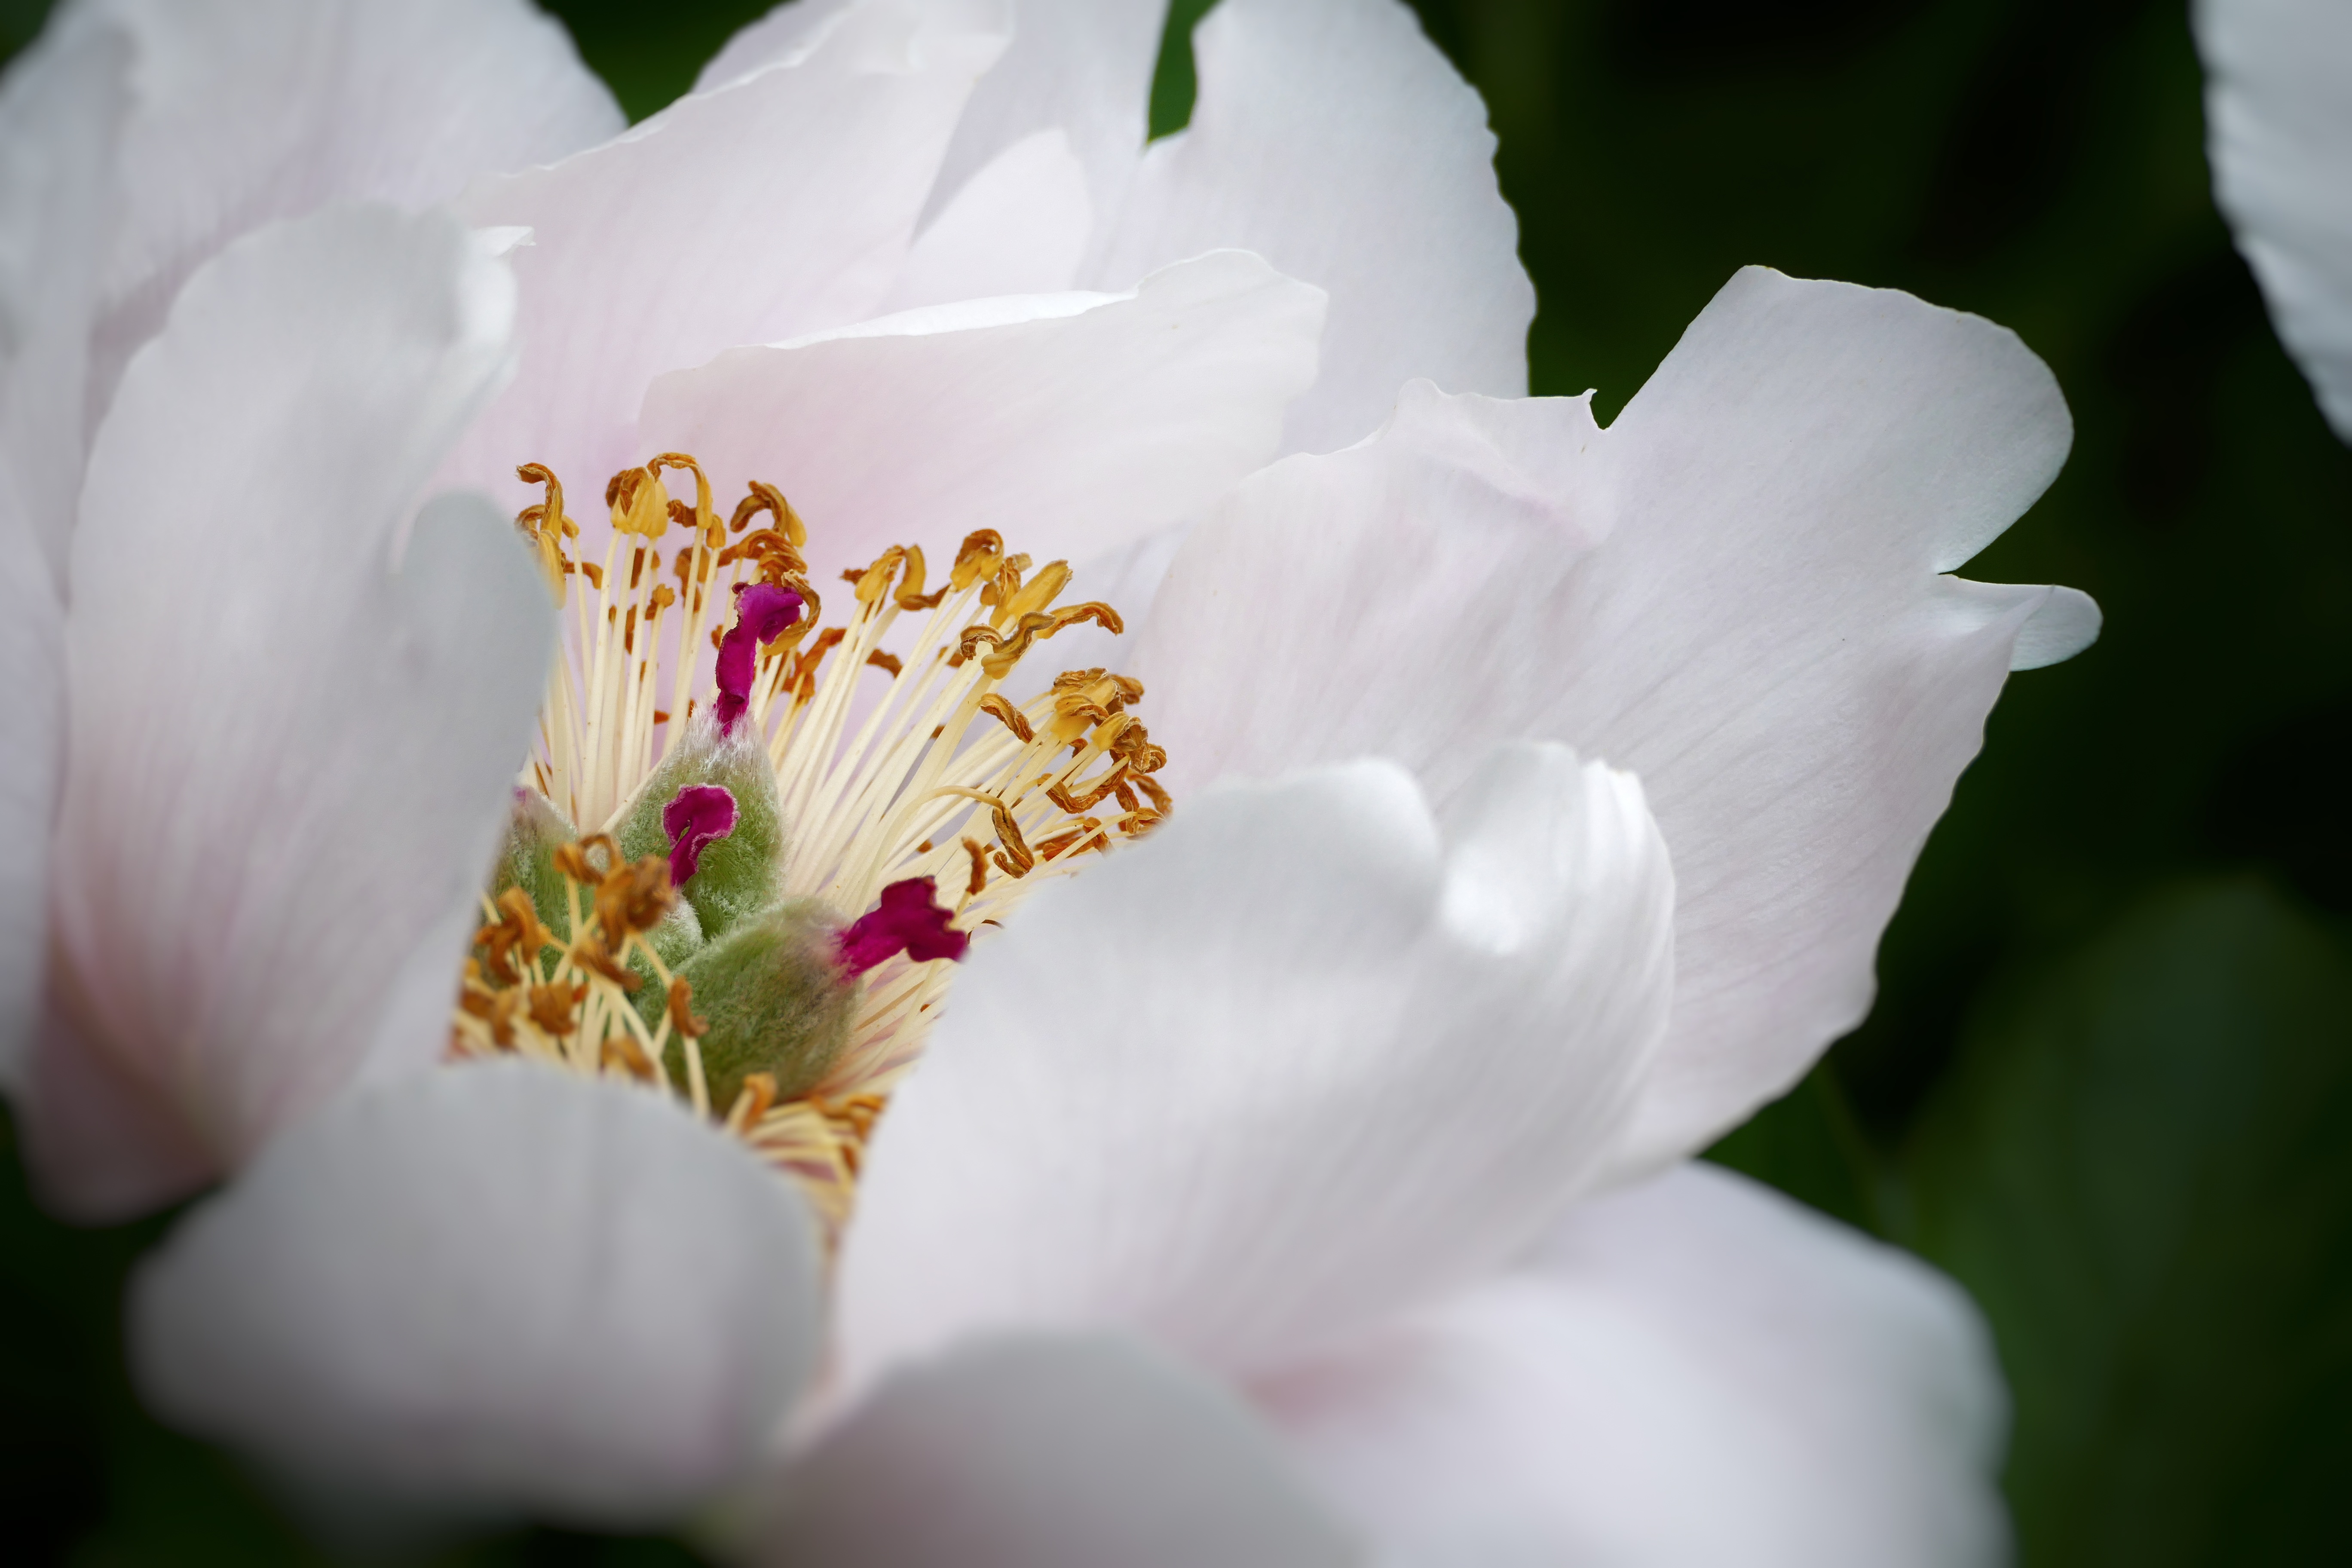 Macro shot of center of white flower - Arboretum